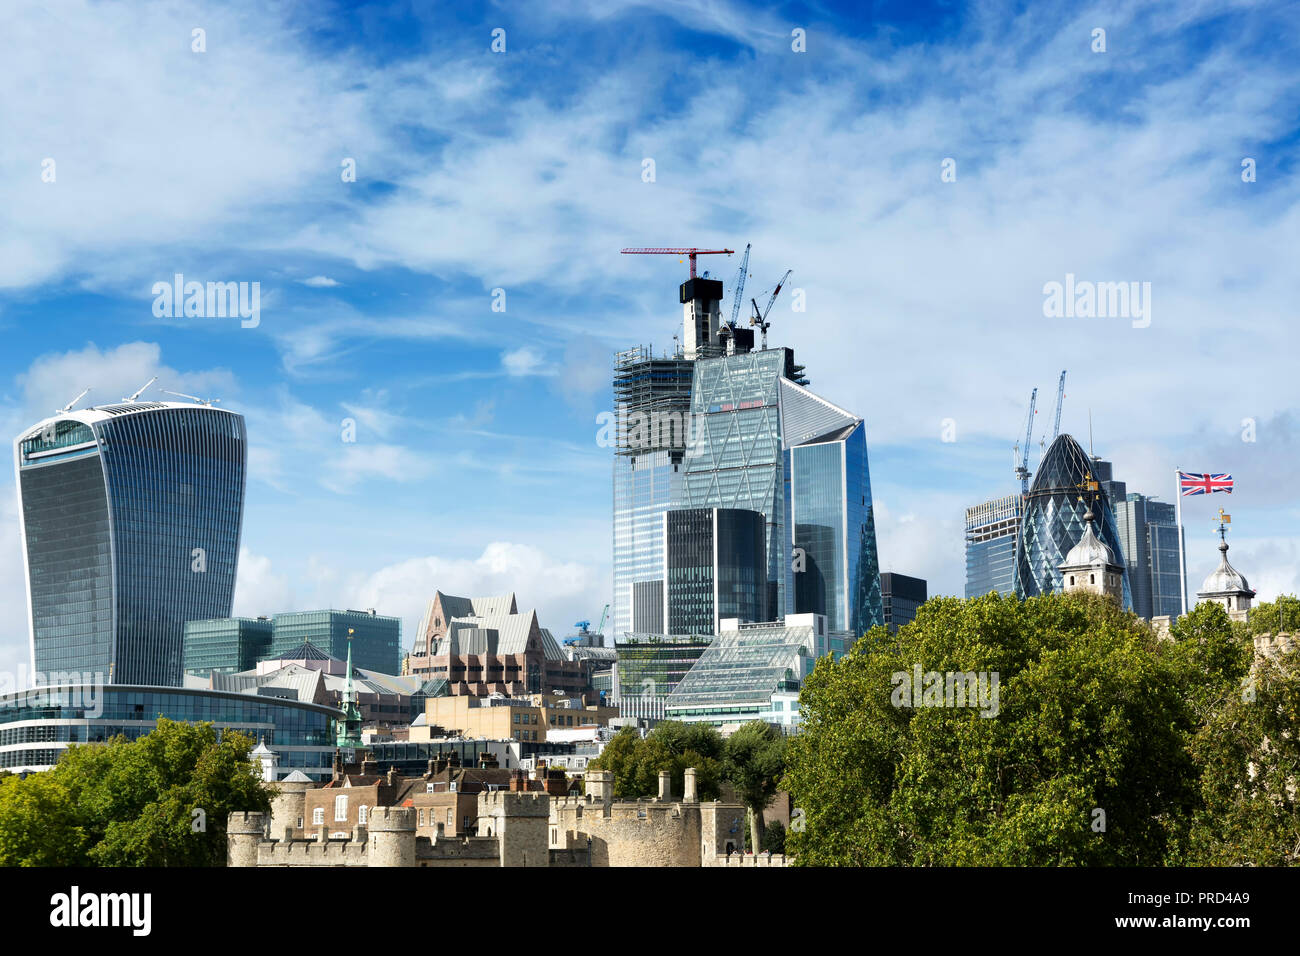 Détail de la ville de Londres avec des immeubles modernes en 19. Septembre 2018. (Royaume-uni ) Banque D'Images